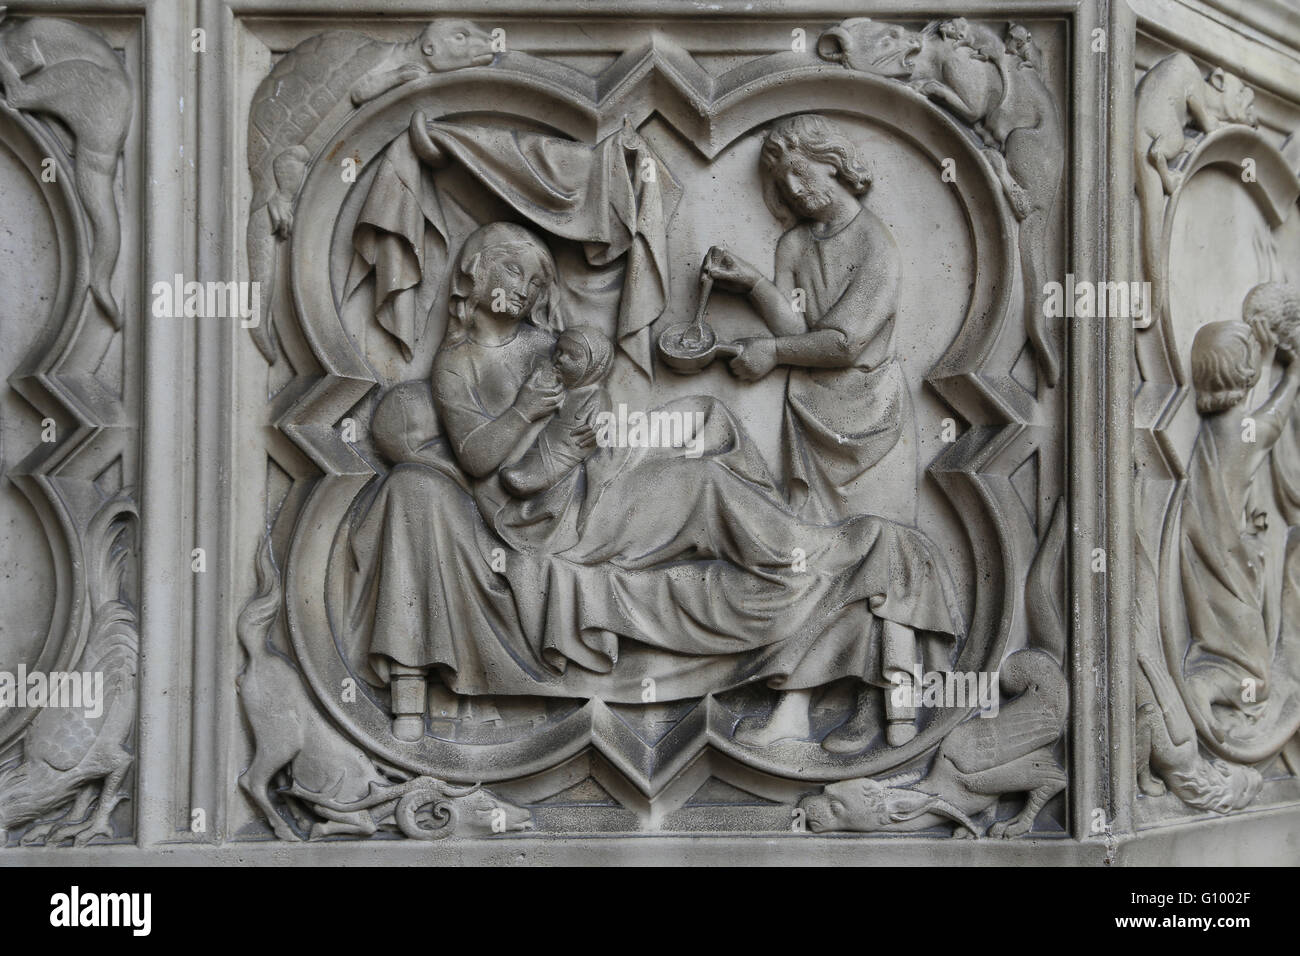 Adam, Zubereitung von Speisen für Eve, die im Bett, die Pflege eines Kindes ist. Relief. 13. c.  Sainte-Chapelle, Paris, Frankreich. Stockfoto